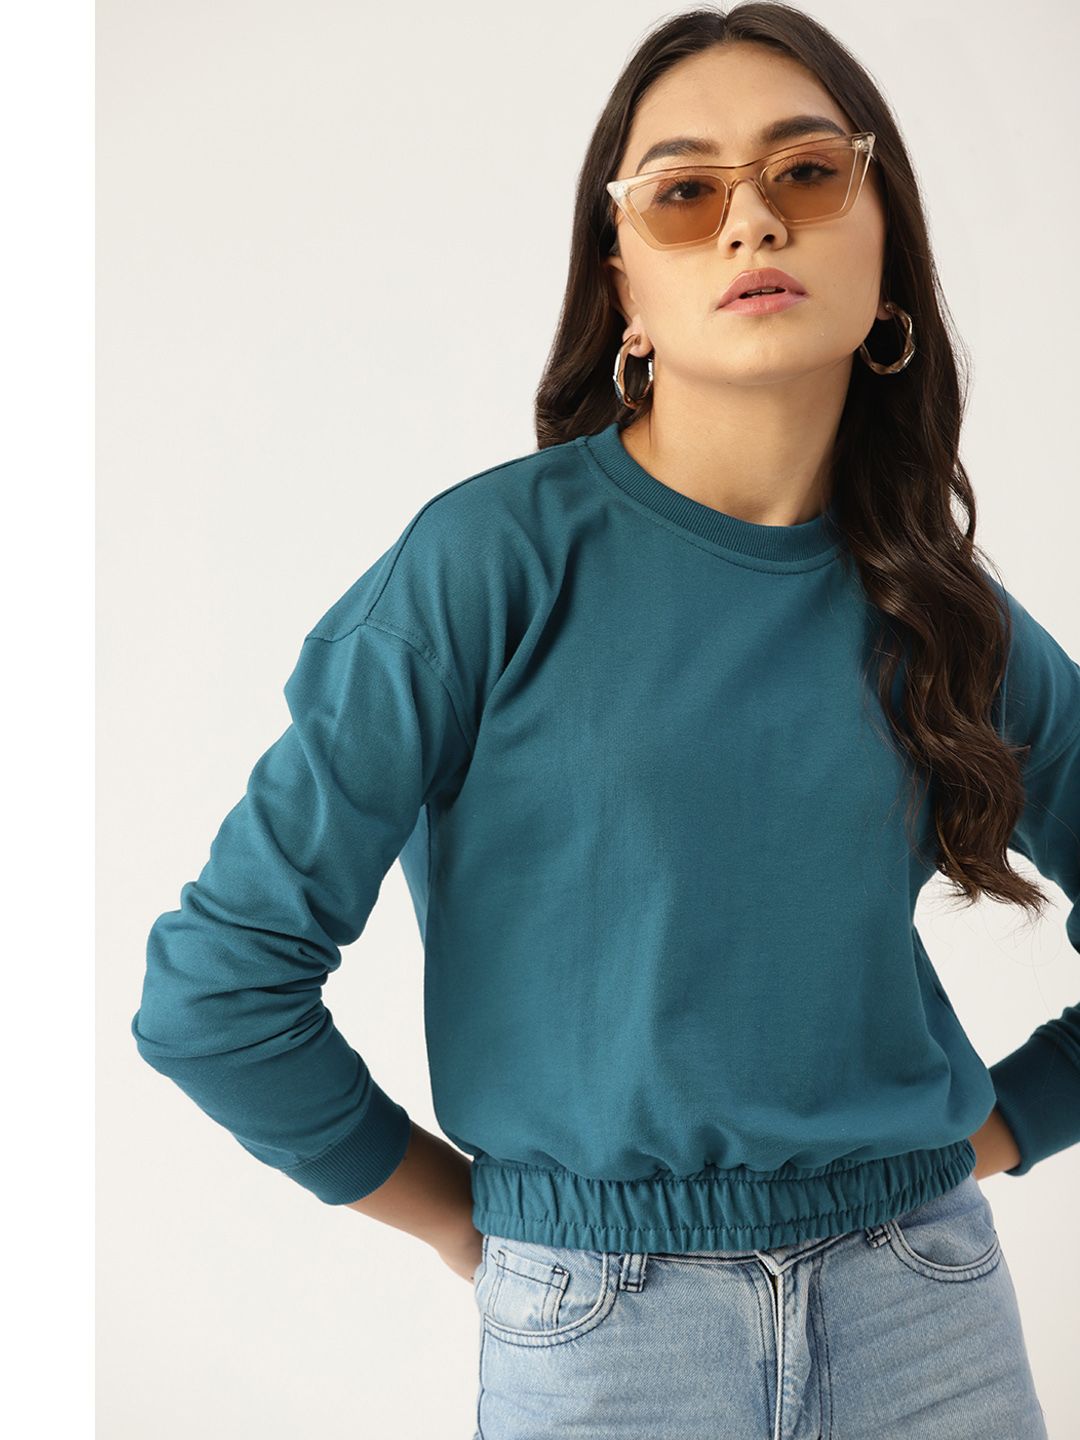 DressBerry Women Teal Sweatshirt Price in India